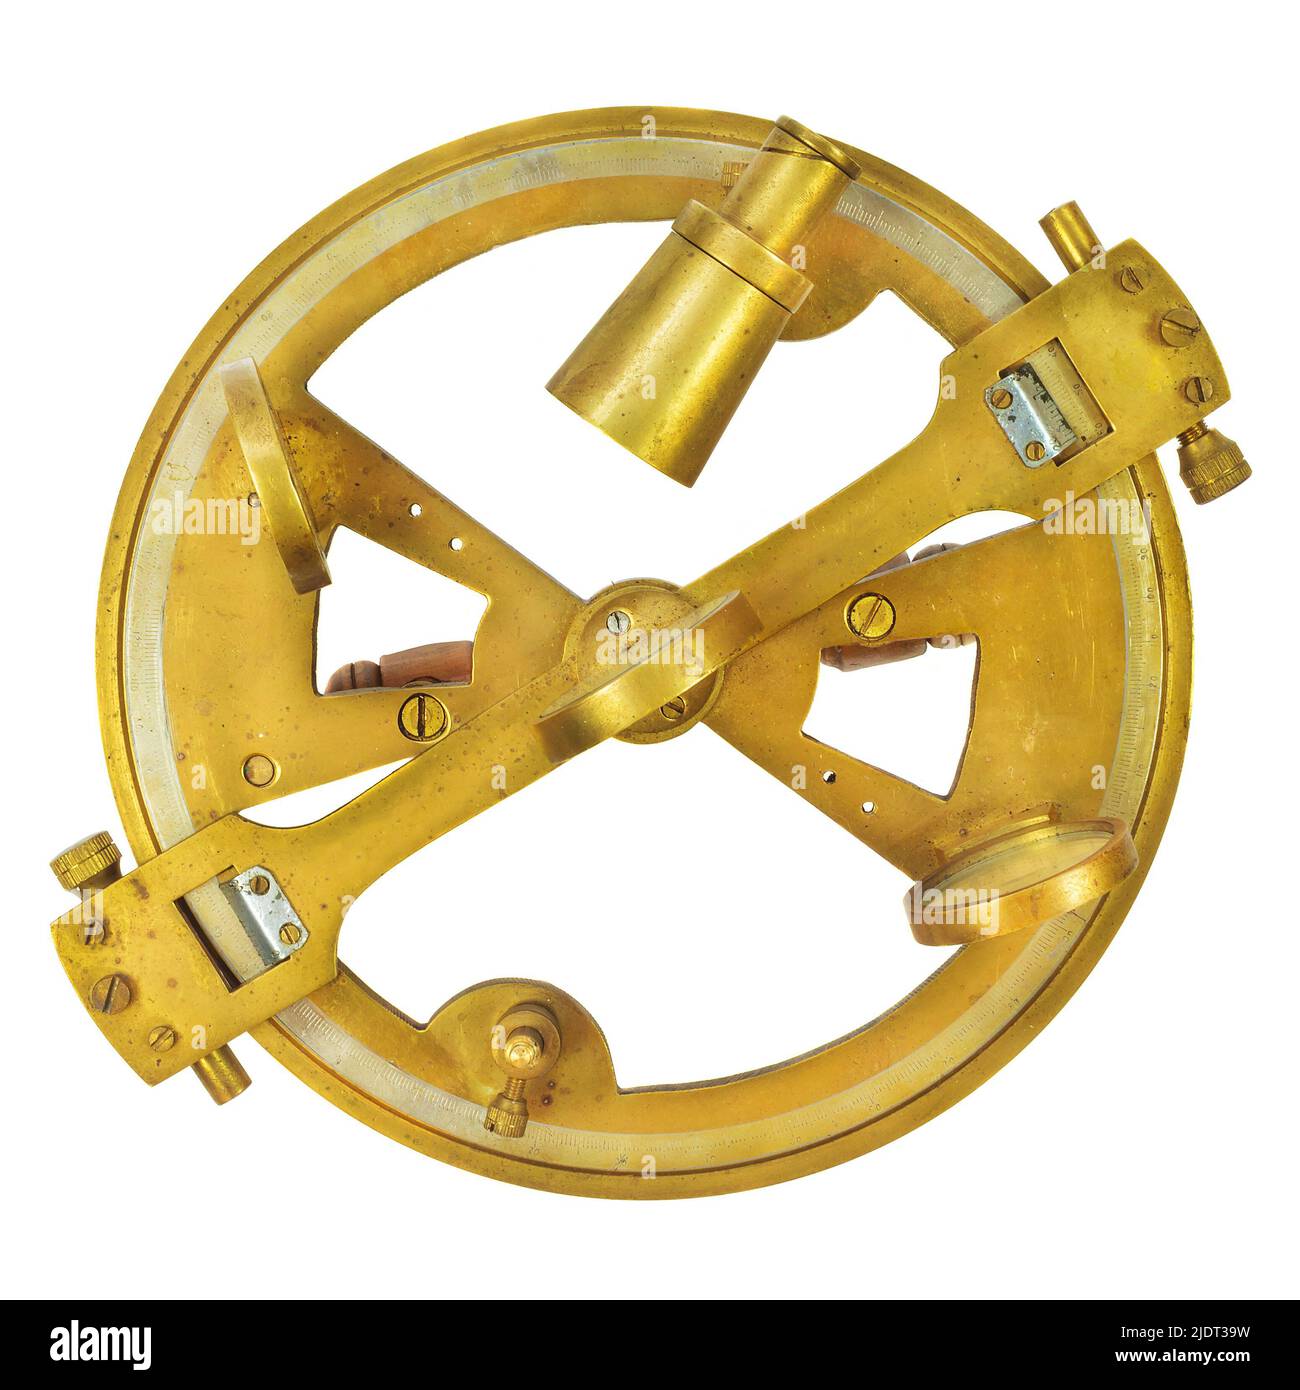 Authentique astrolabe nautique isolé sur fond blanc Banque D'Images